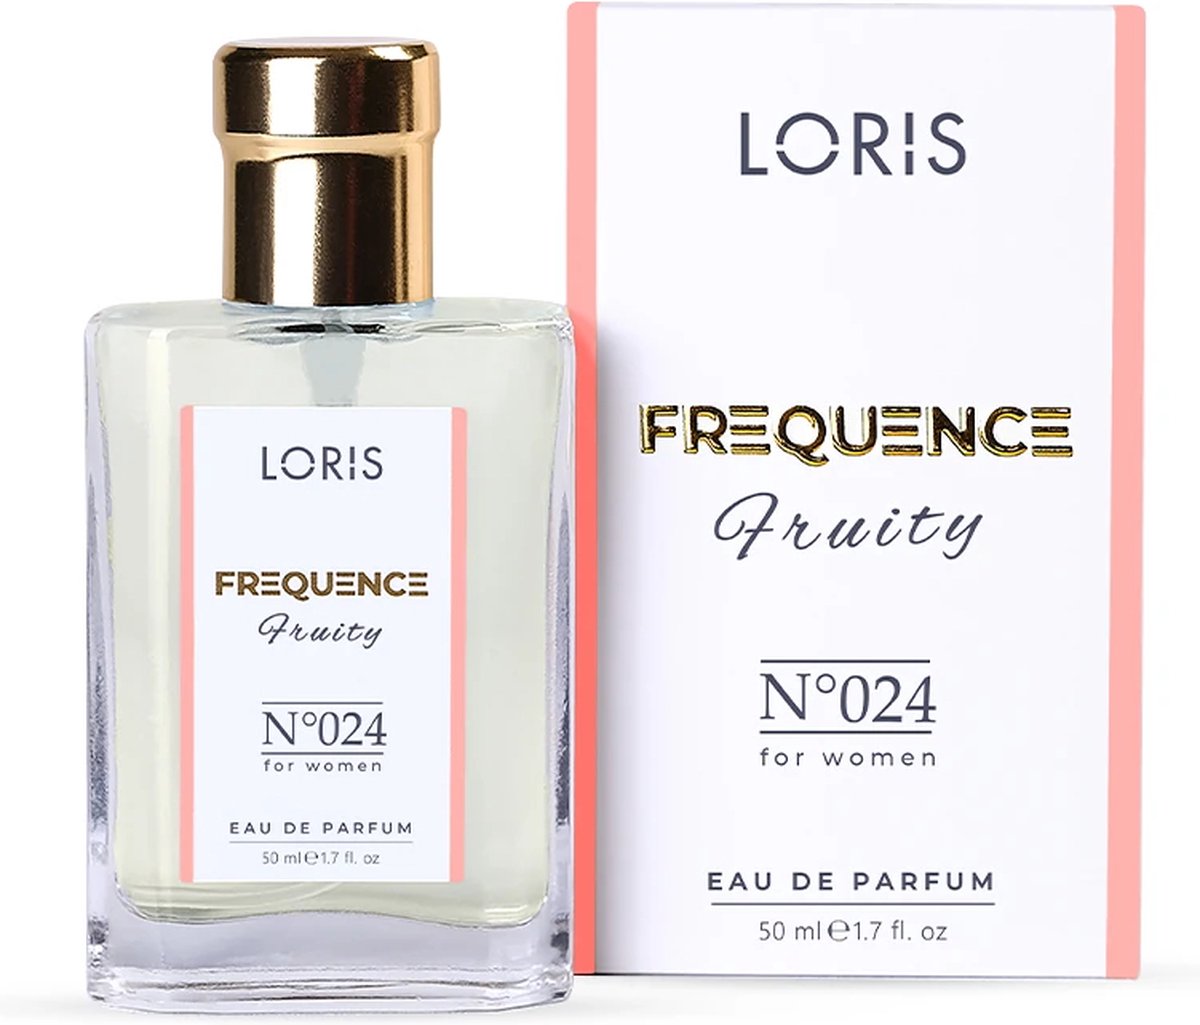 Loris Parfum Frequence Fruity - 024 - Damesparfum - 50ML - Eau de Parfum